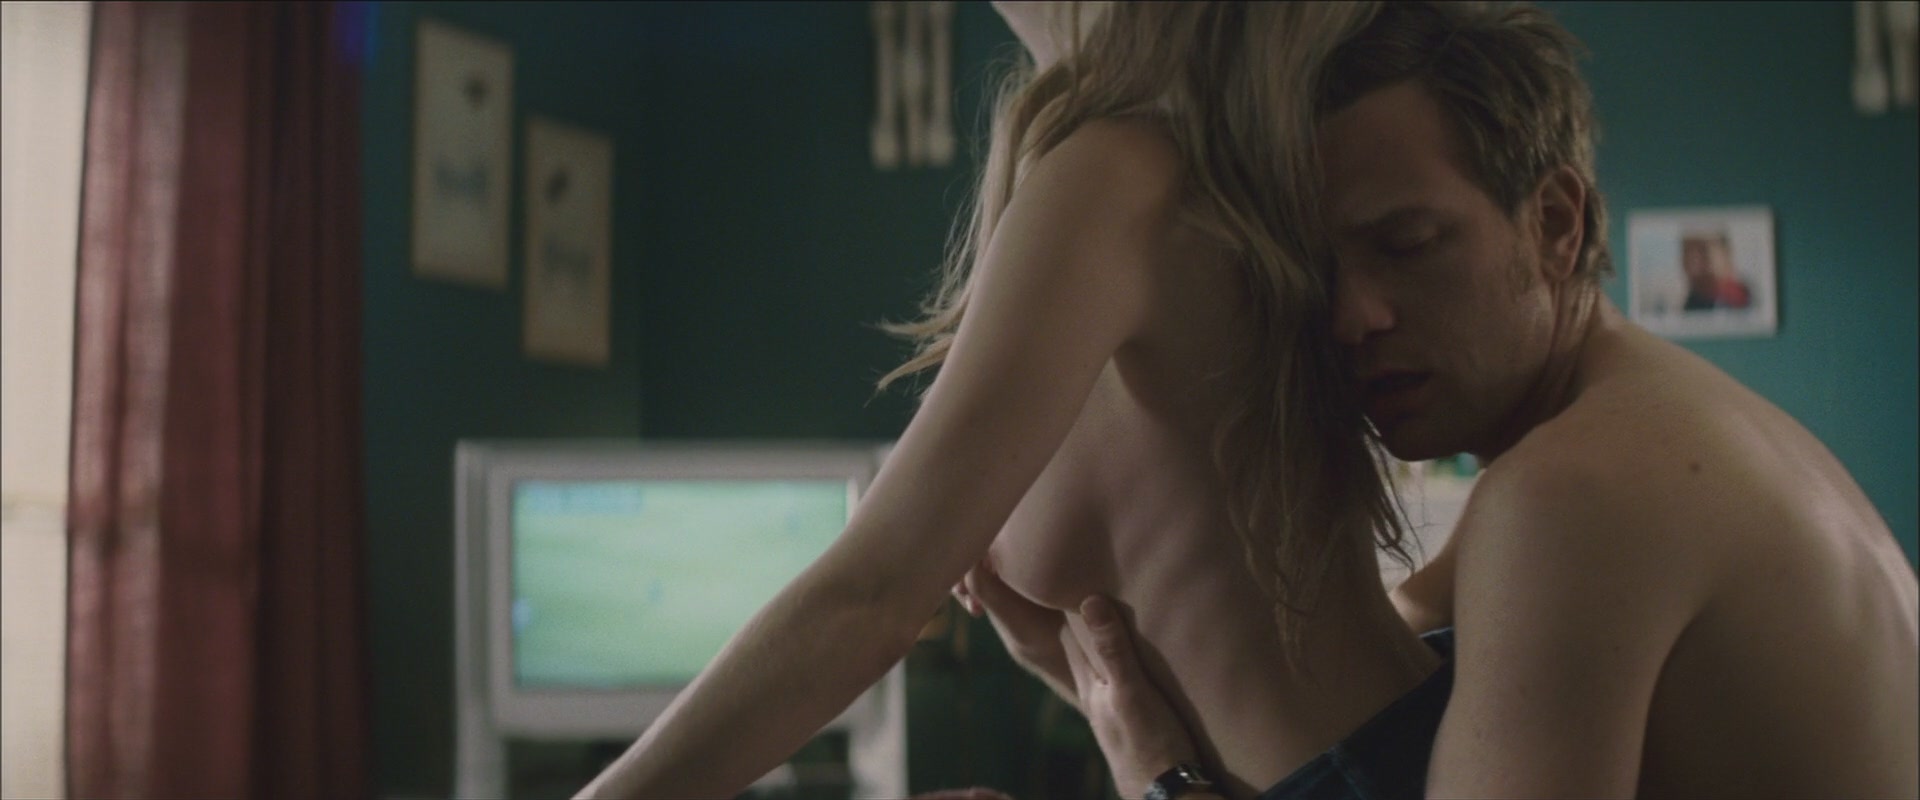 Мишель Уильямс nude pics.